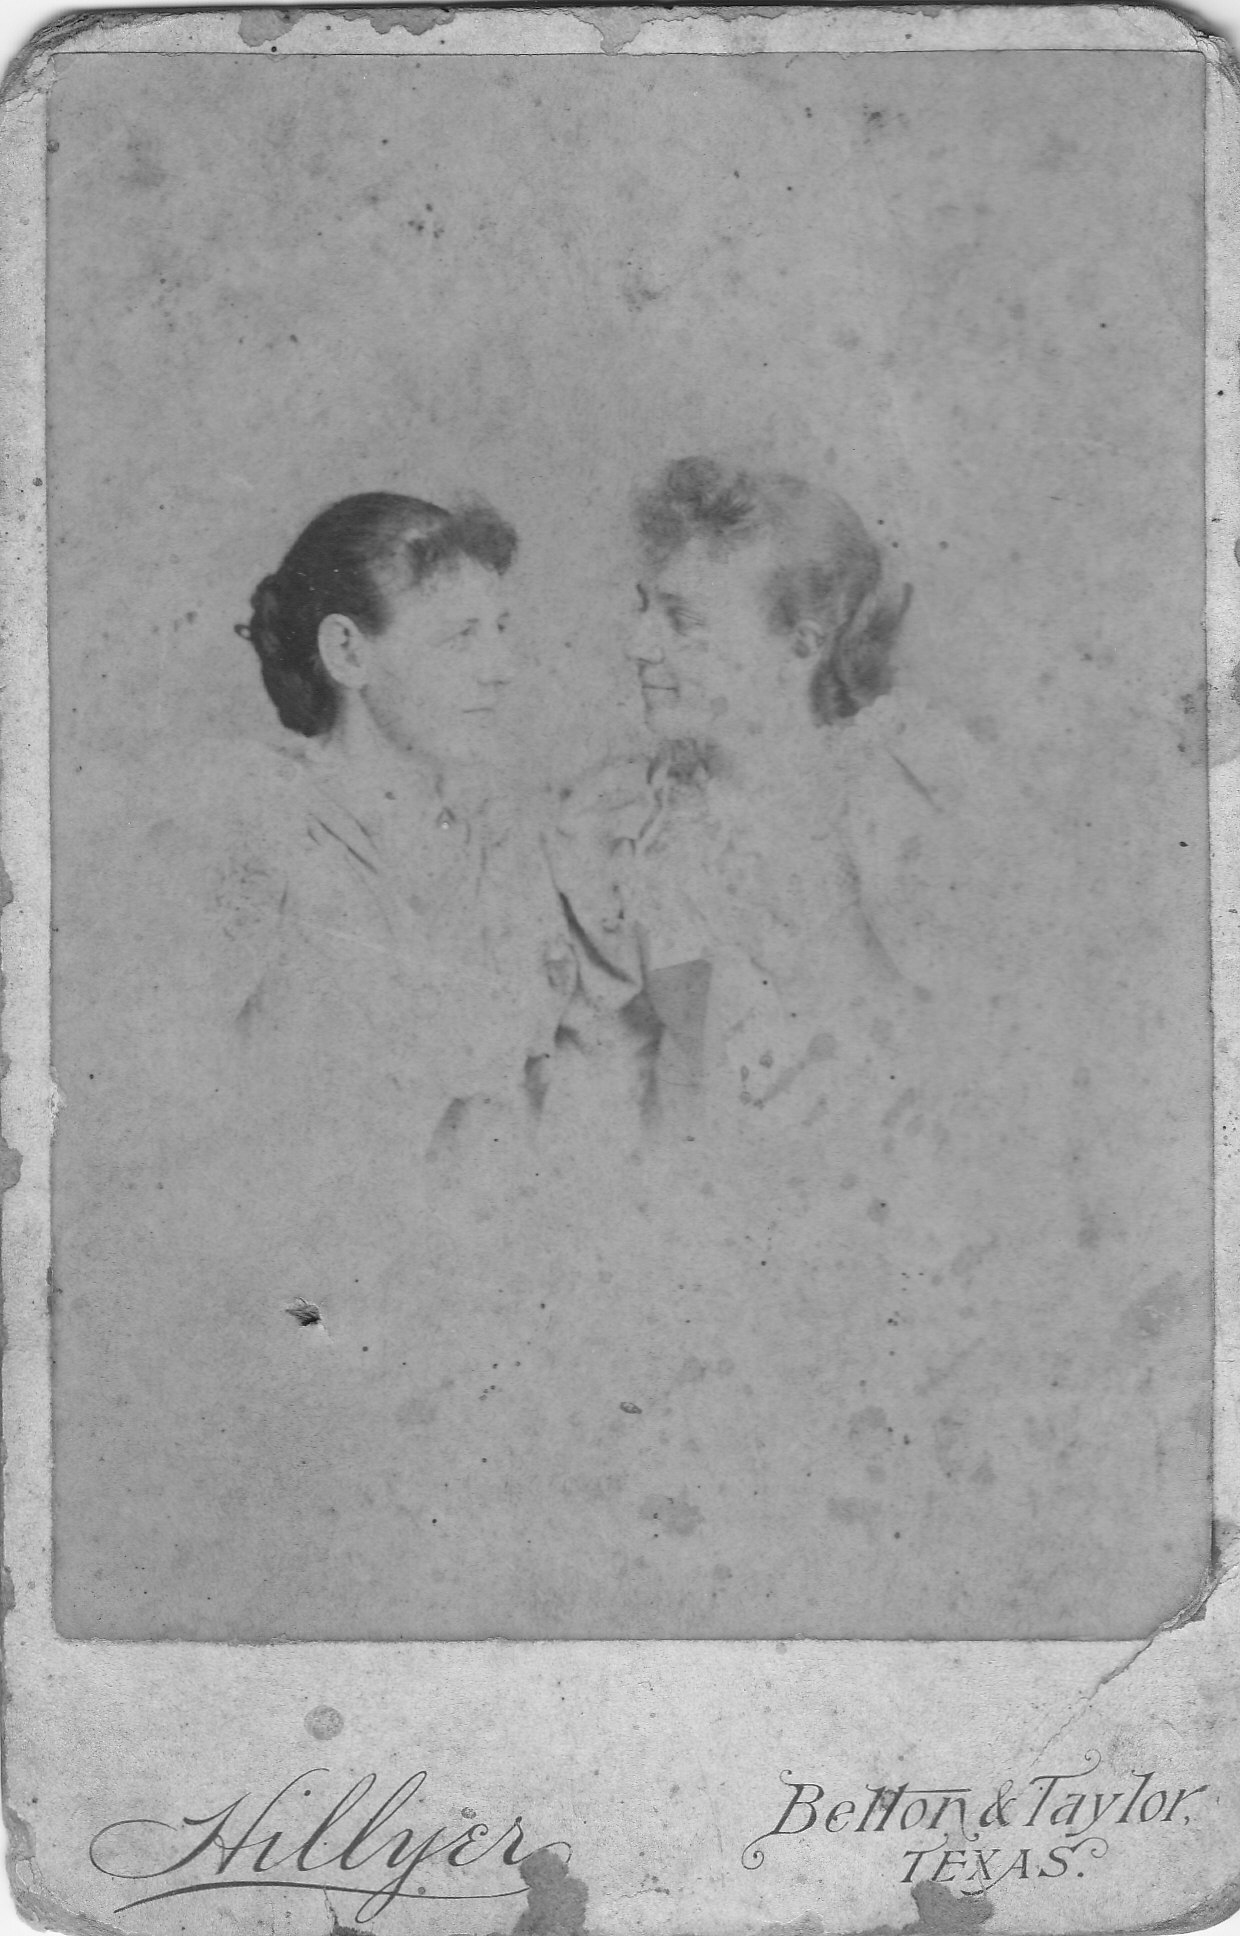 133: Ada and Minnie - June 1893